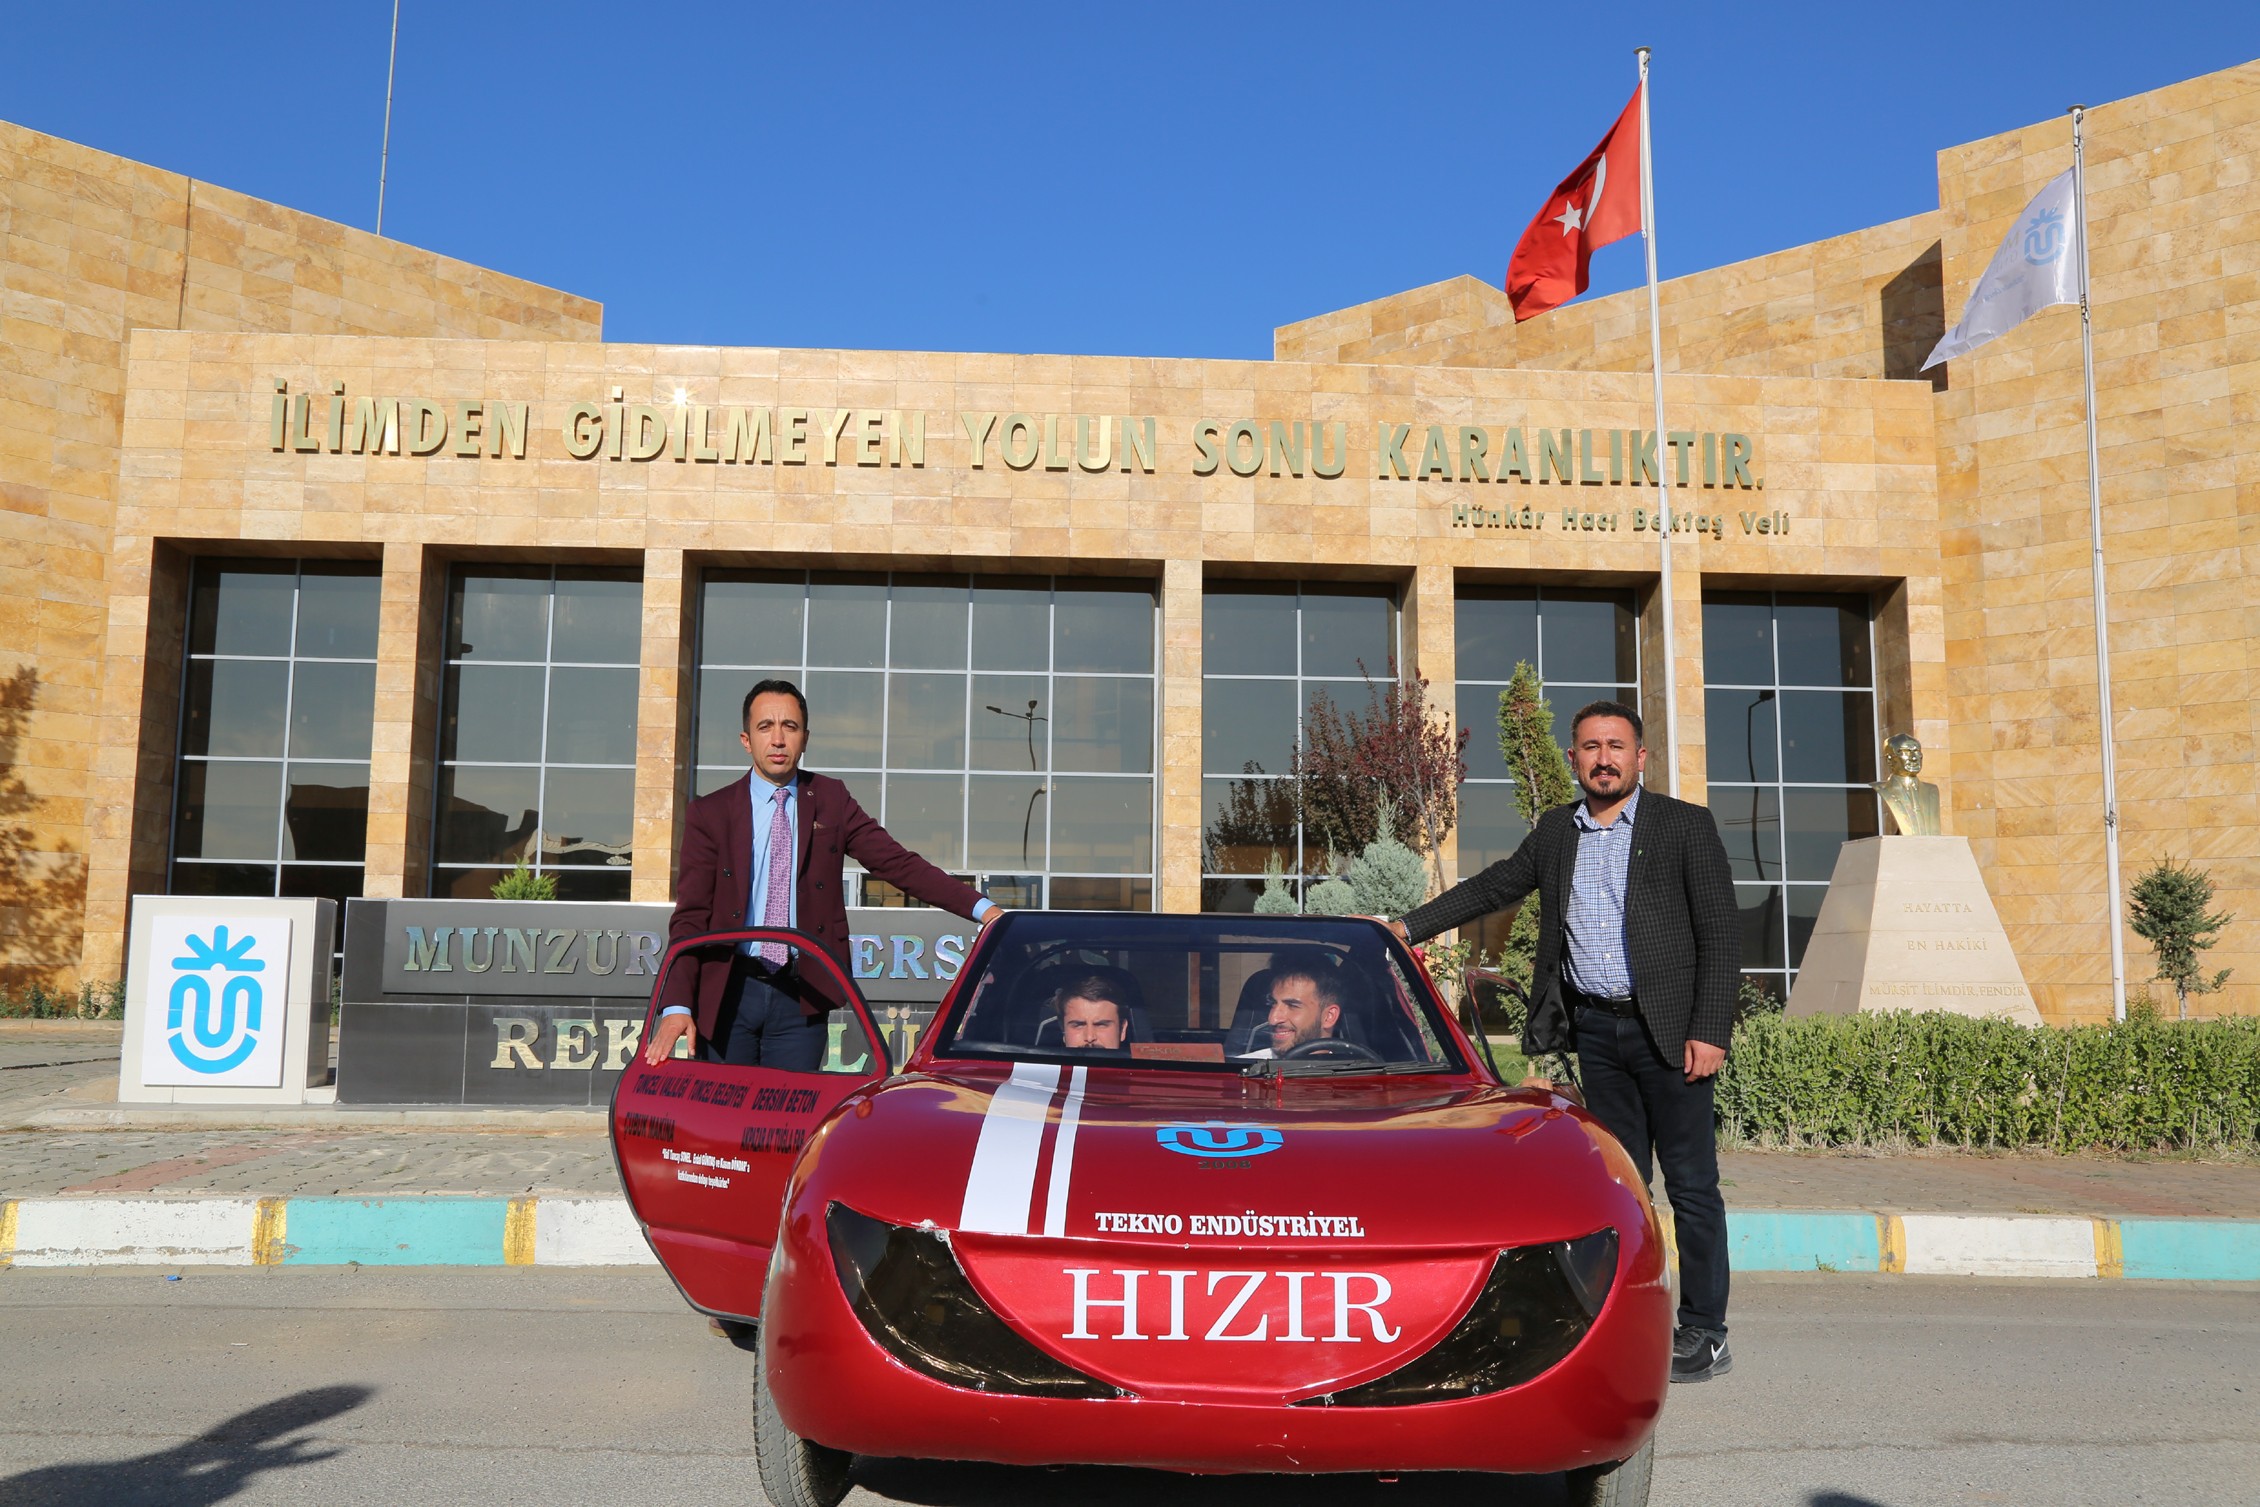 Saatte 62 kilometre hız yapabilen aracın test sürüşü Munzur Üniversitesi Aktuluk Kampusü’nde gerçekleştirildi.